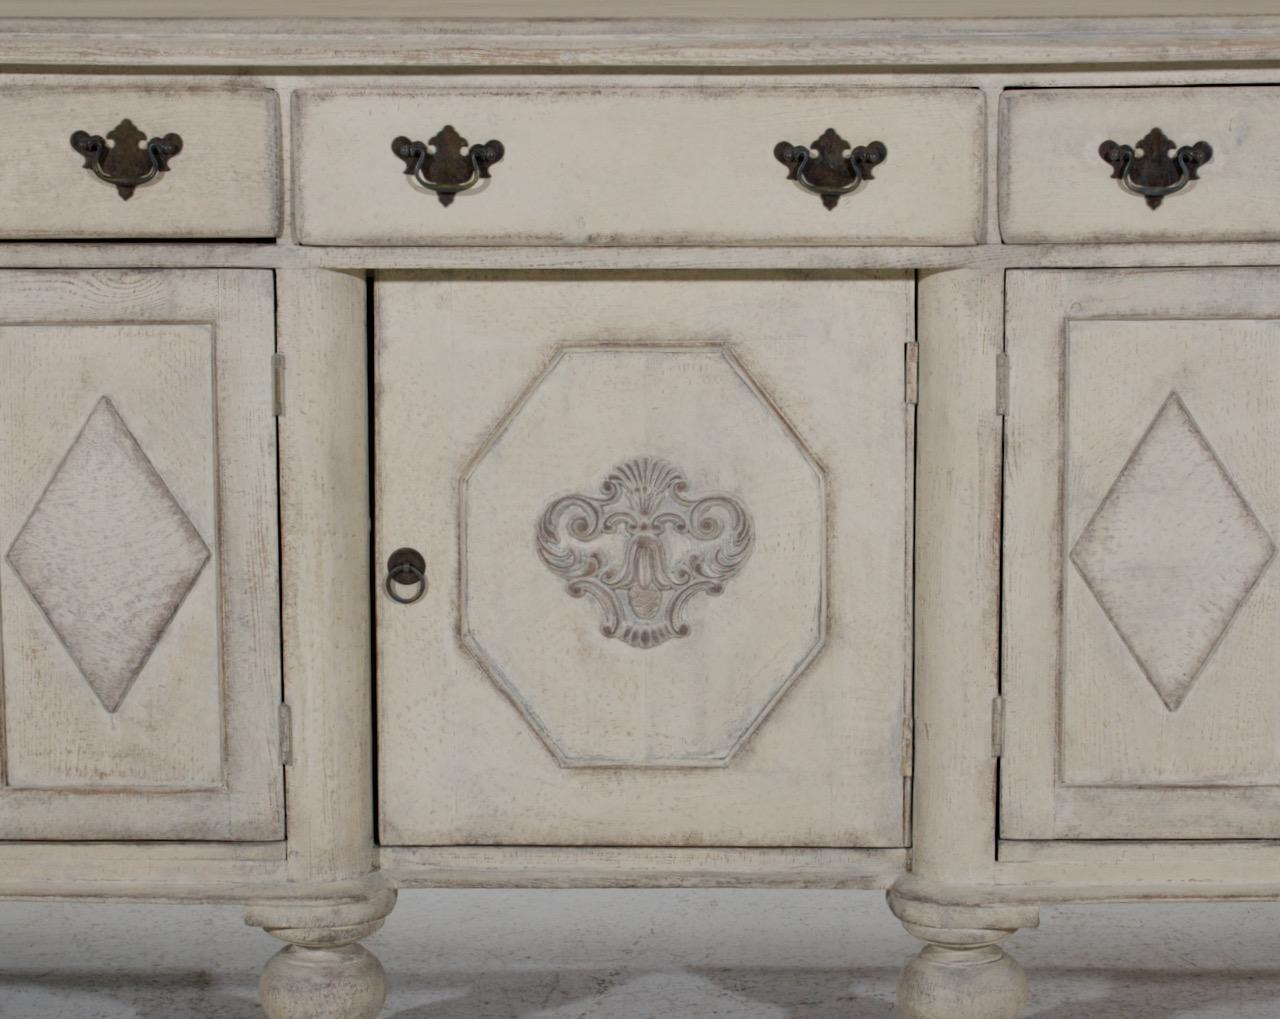 European dresser, with five doors, 19th century
measurements:
H. 199 H-desk. 91 W. 200 D. 59 cm
H. 78.3 H-desk. 35.8 W. 78.7 D. 23.2 in.